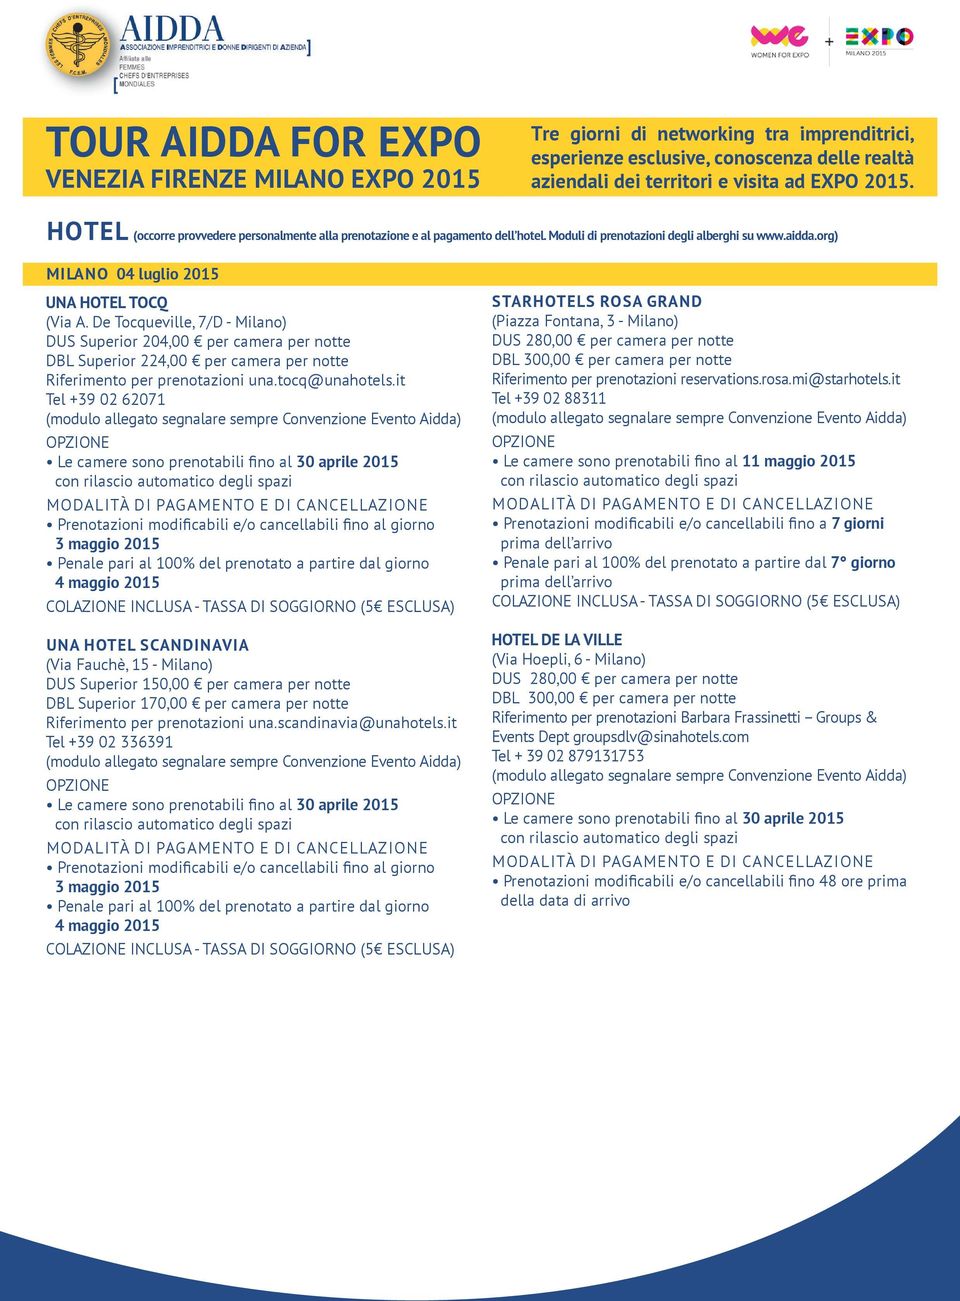 it Tel +39 02 62071 Prenotazioni modificabili e/o cancellabili fino al giorno 3 maggio 2015 Penale pari al 100% del prenotato a partire dal giorno 4 maggio 2015 UNA HOTEL SCANDINAVIA (Via Fauchè, 15